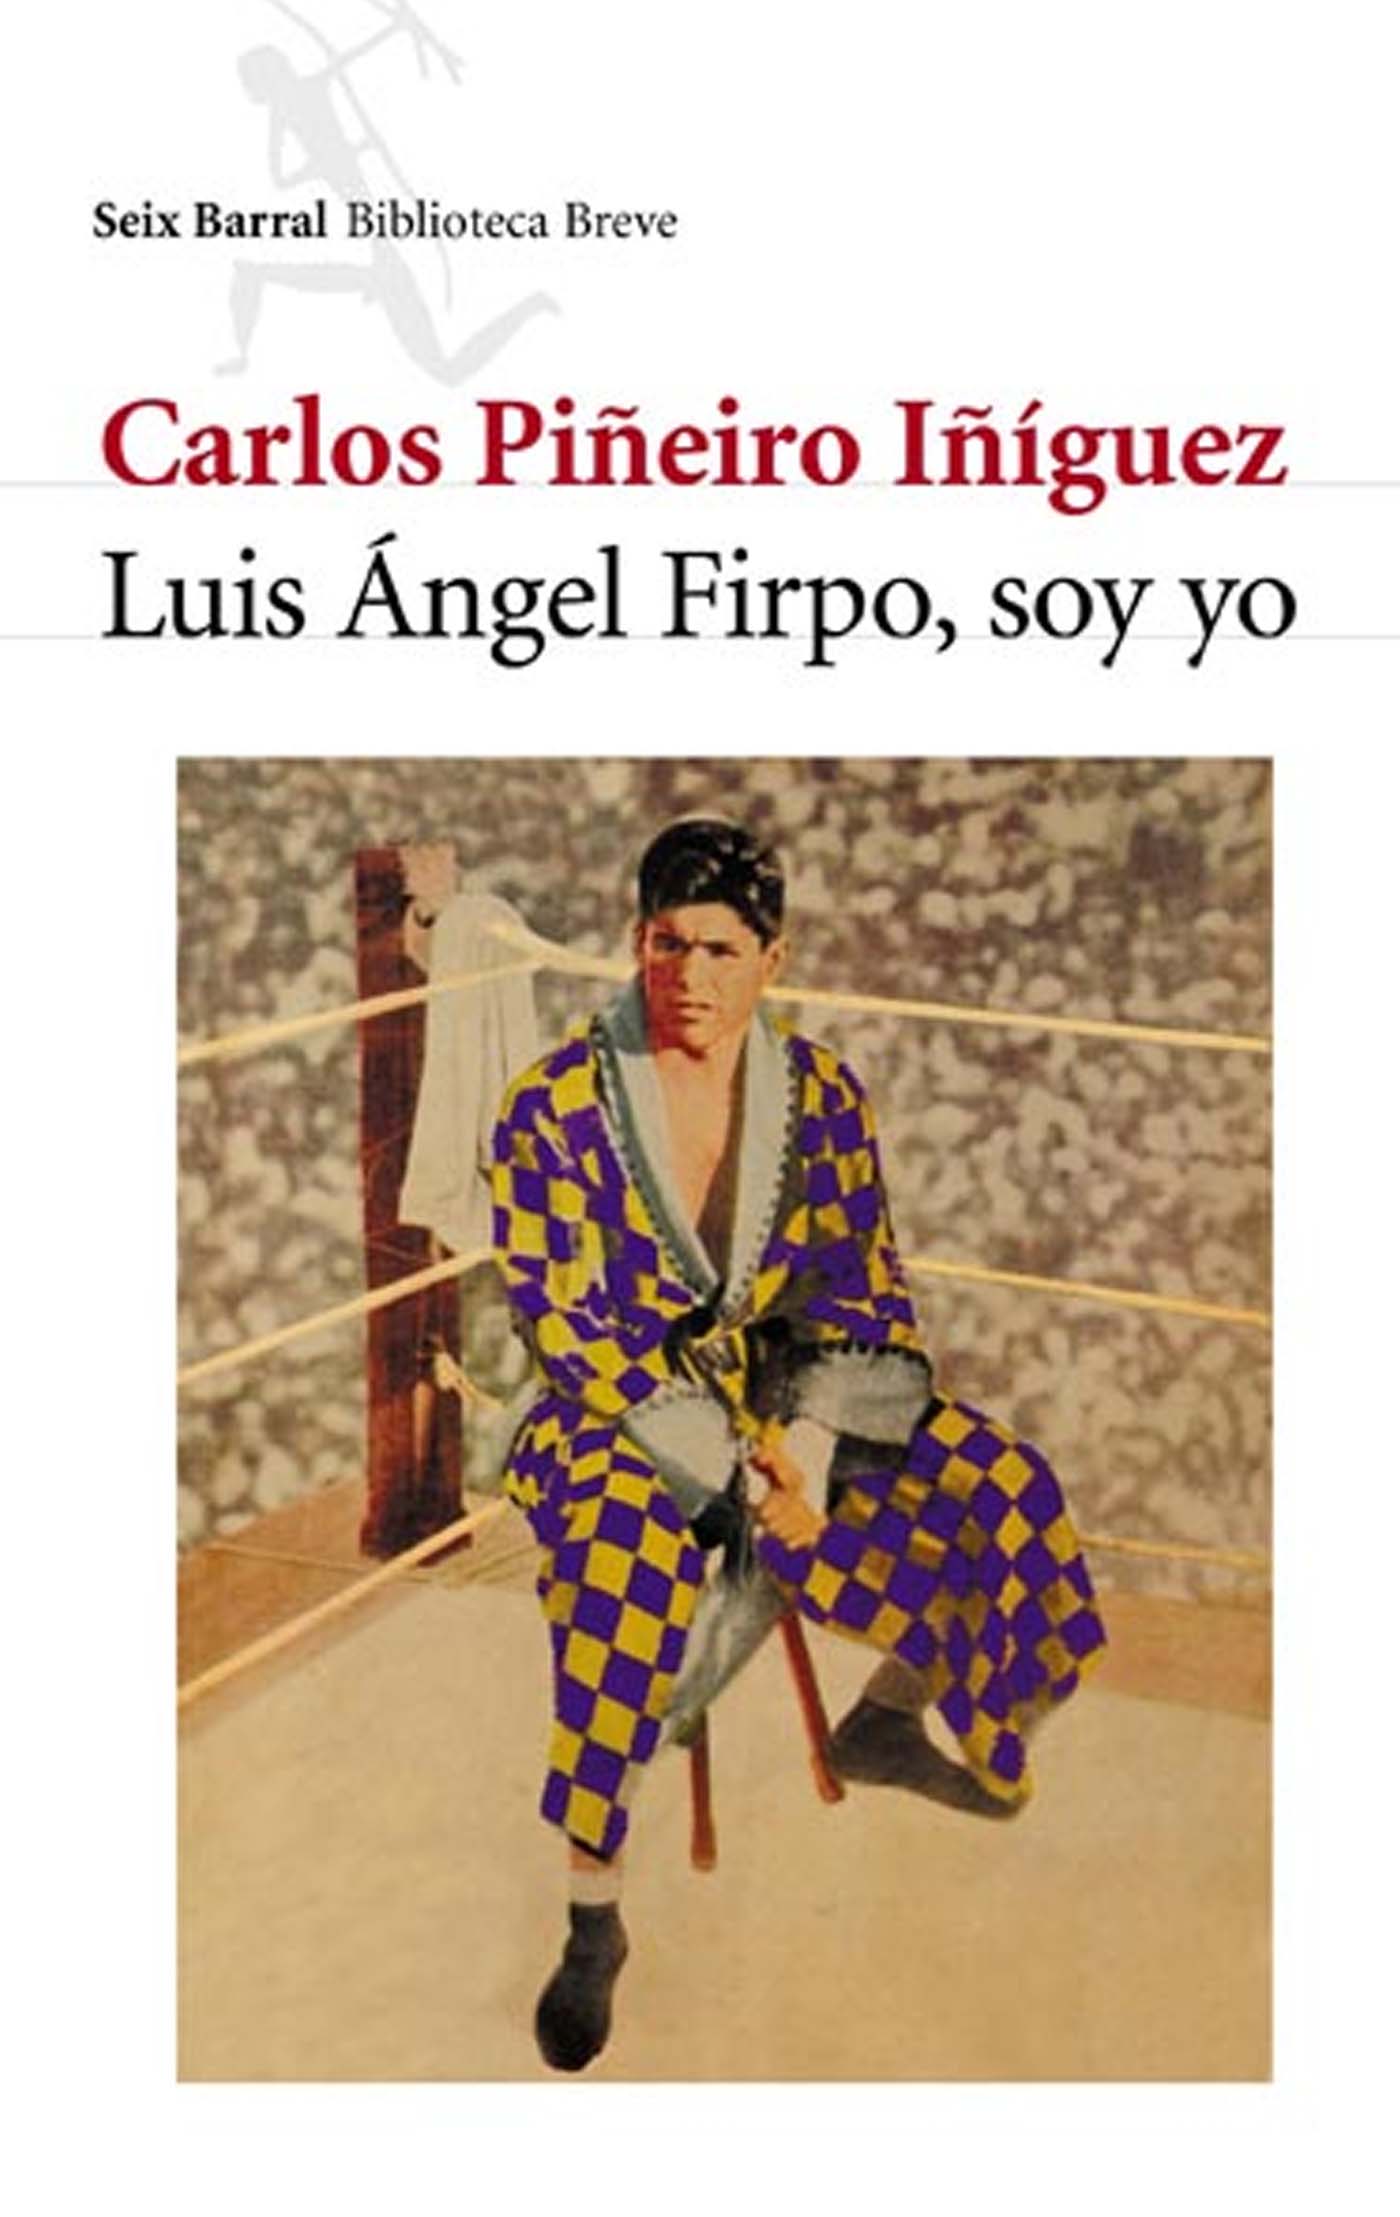 Luis Ángel Firpo soy yo libro de boxeo